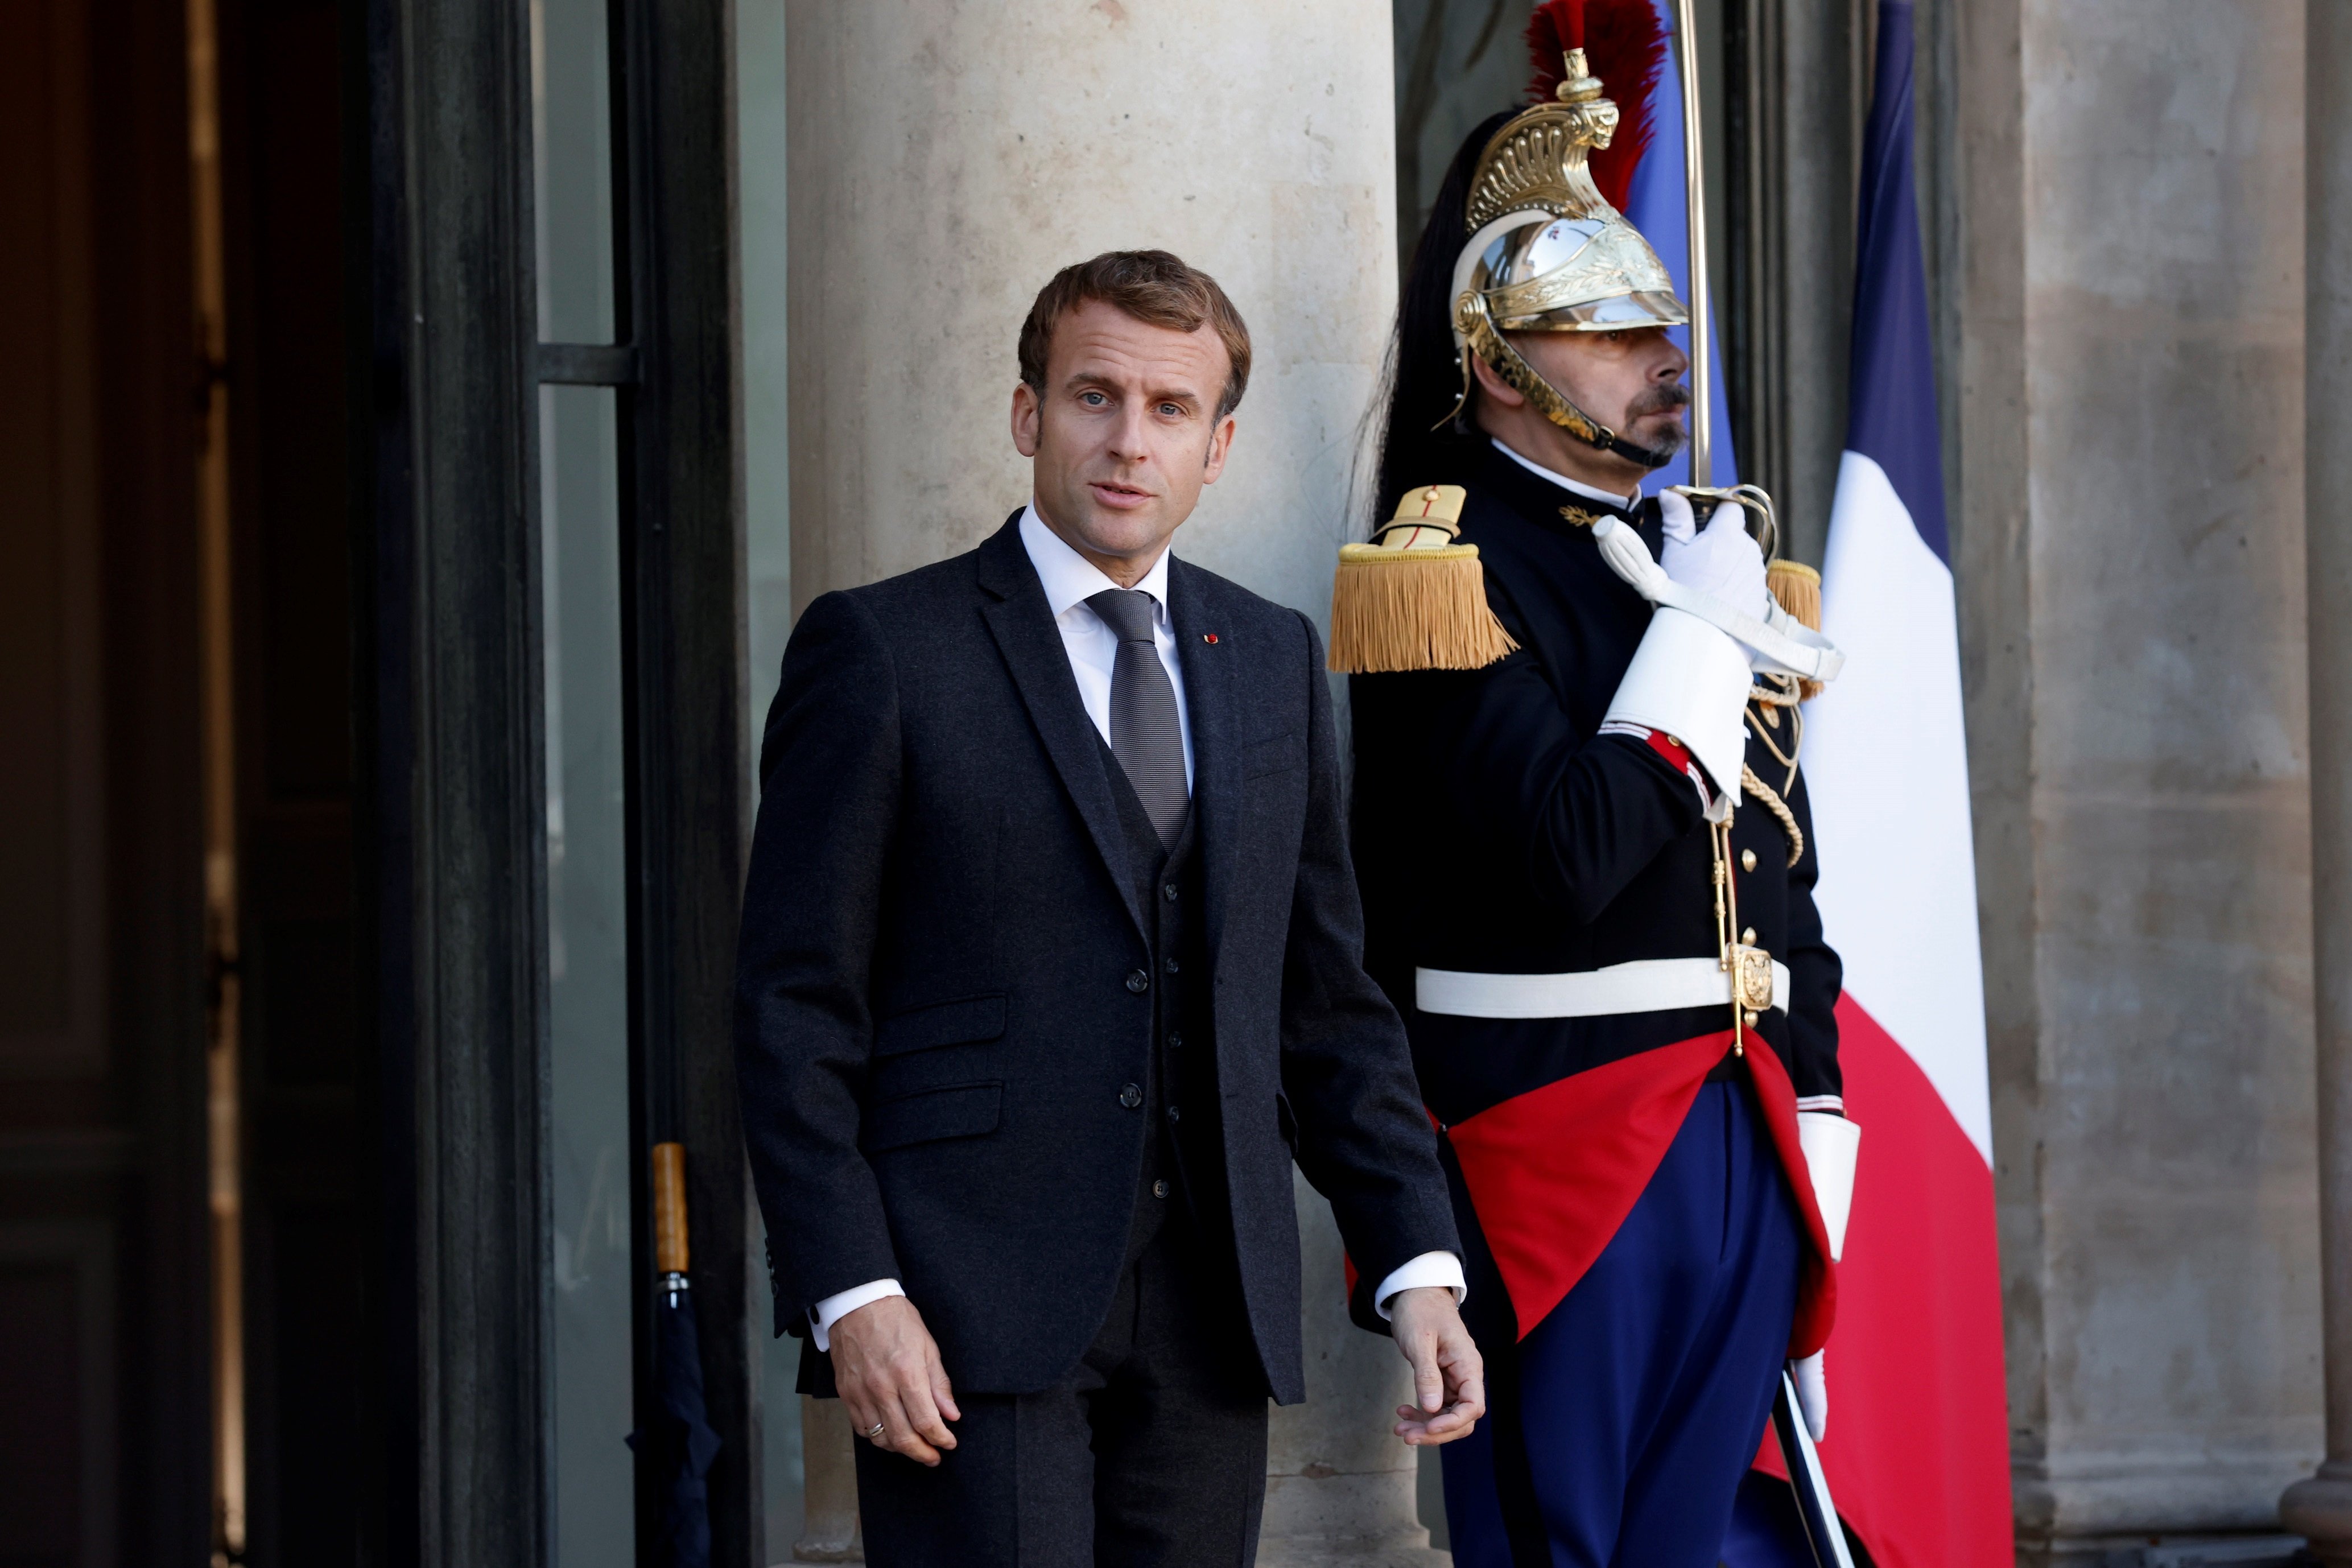 Tensió entre França i Regne Unit: Londres crida a consultes l'ambaixadora francesa